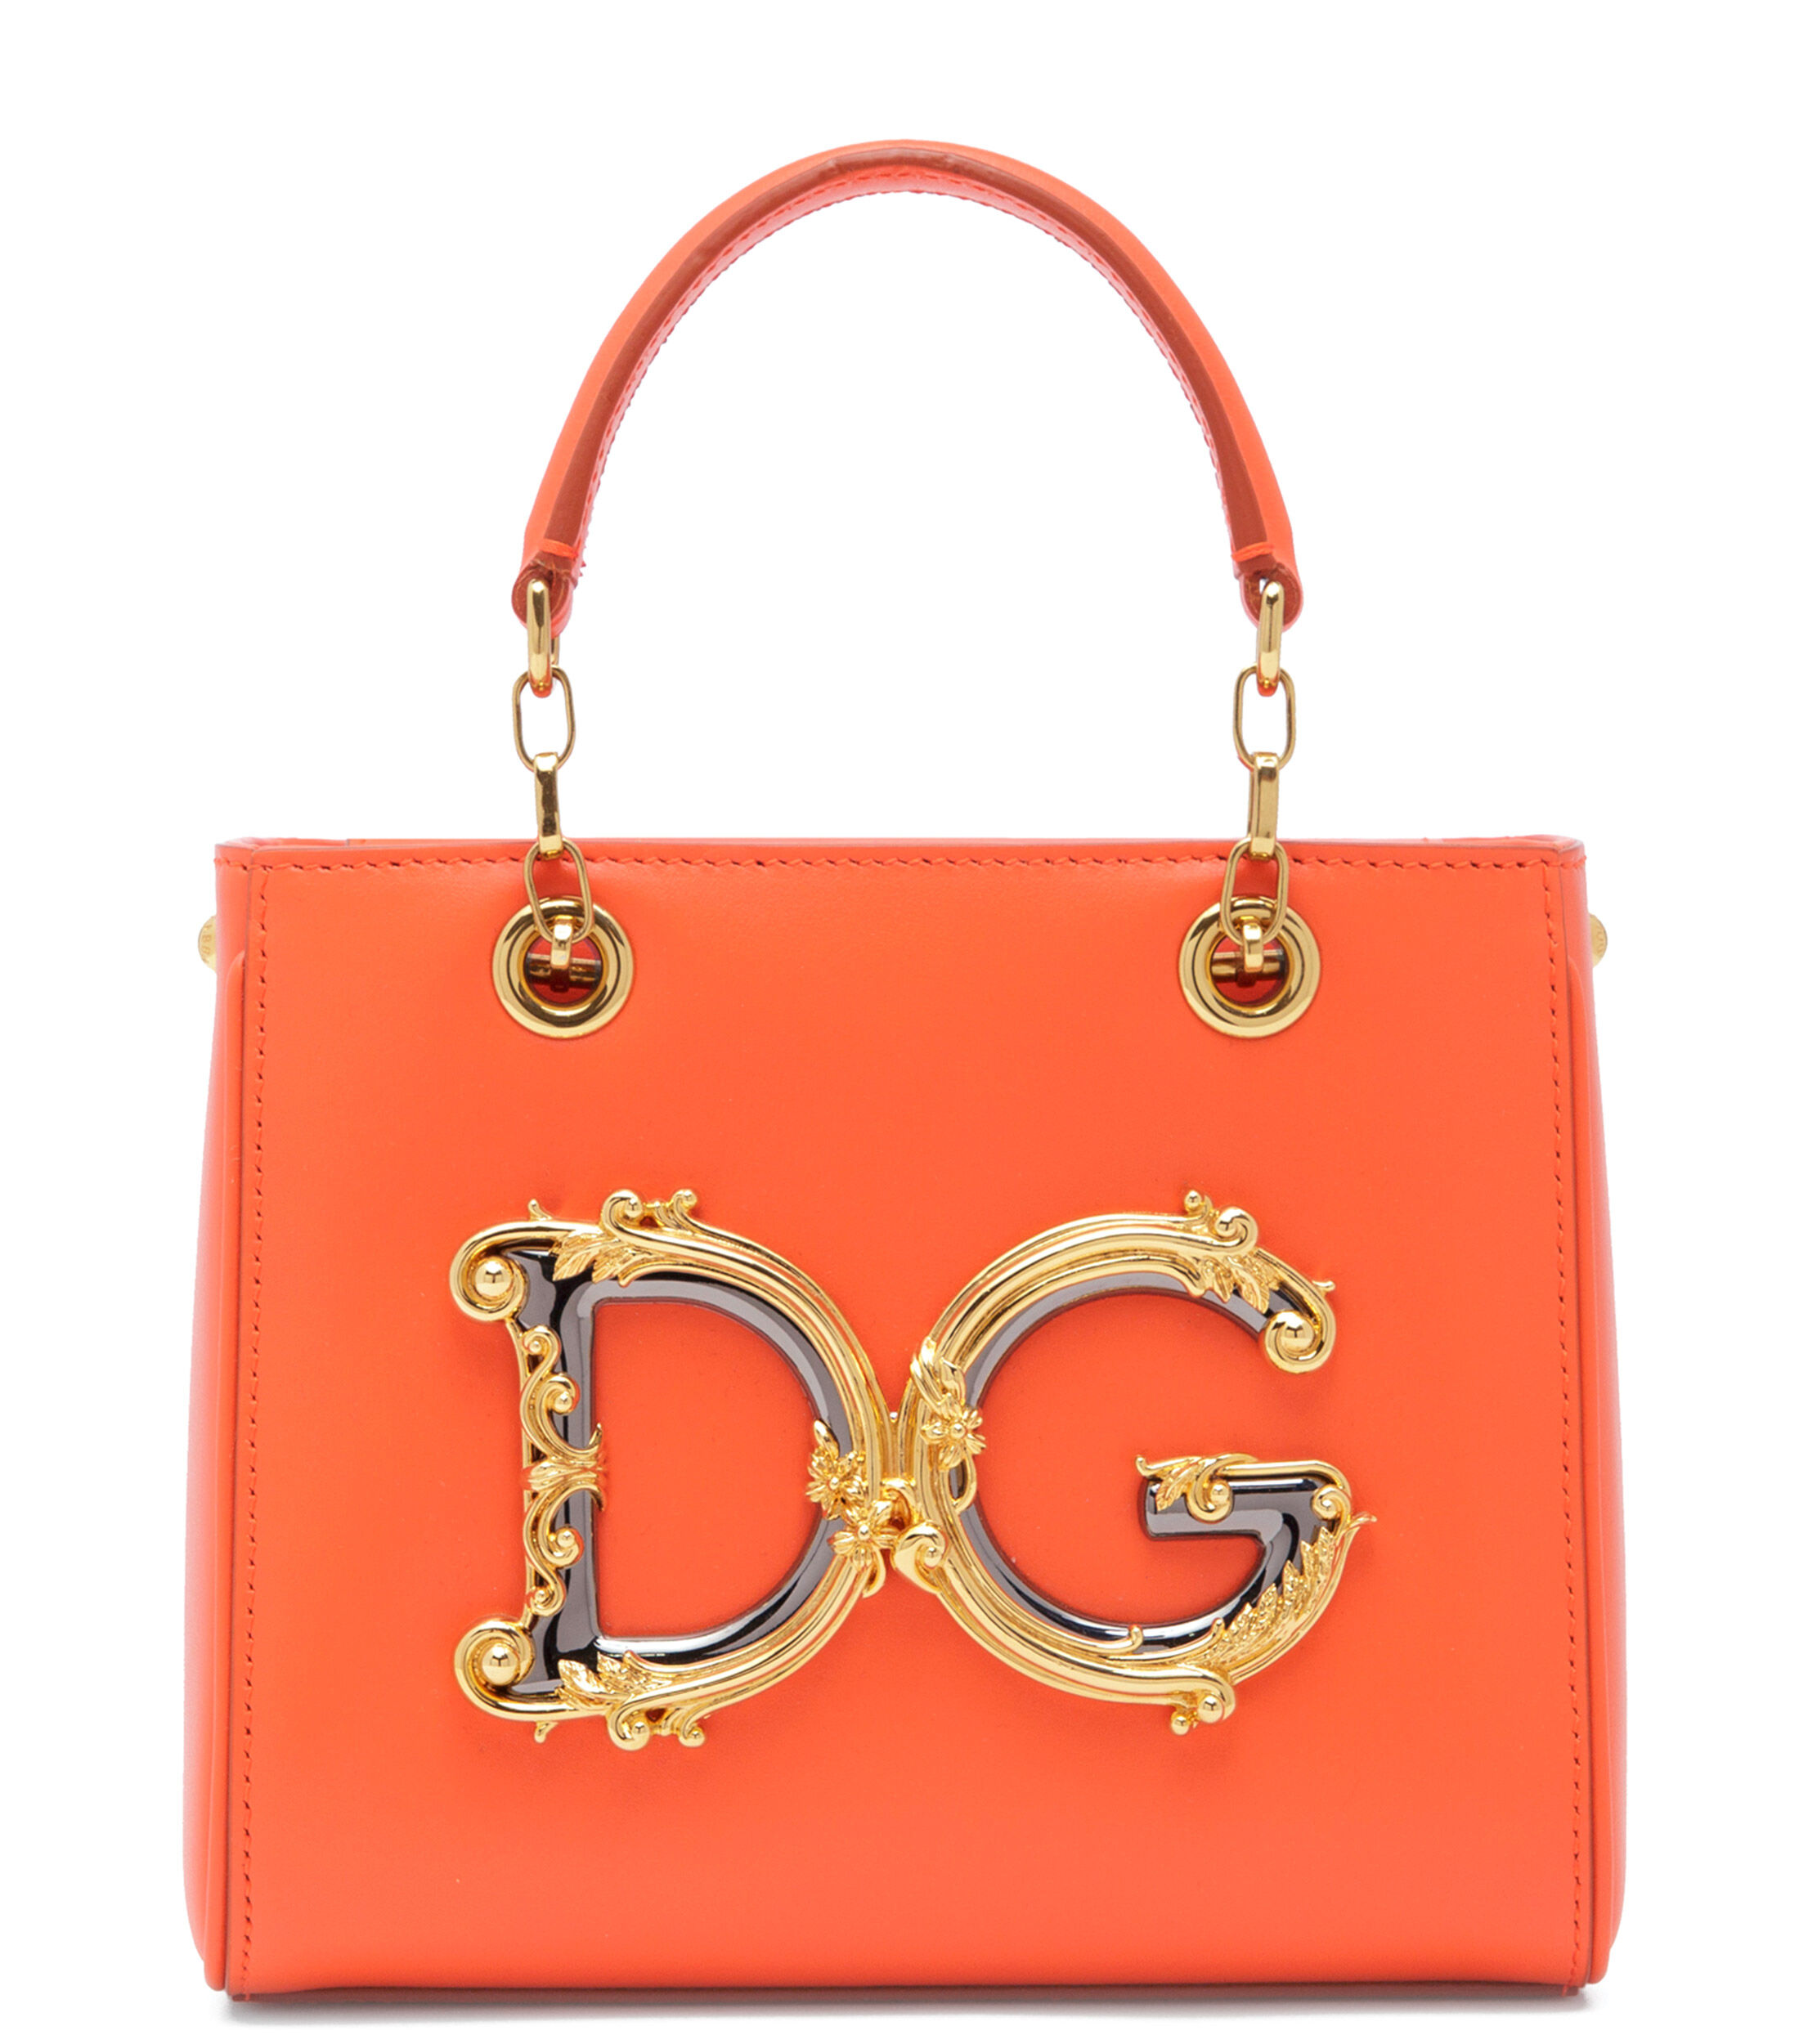 Dolce&Gabbana se une a El Palacio de Hierro como parte de su e-commerce